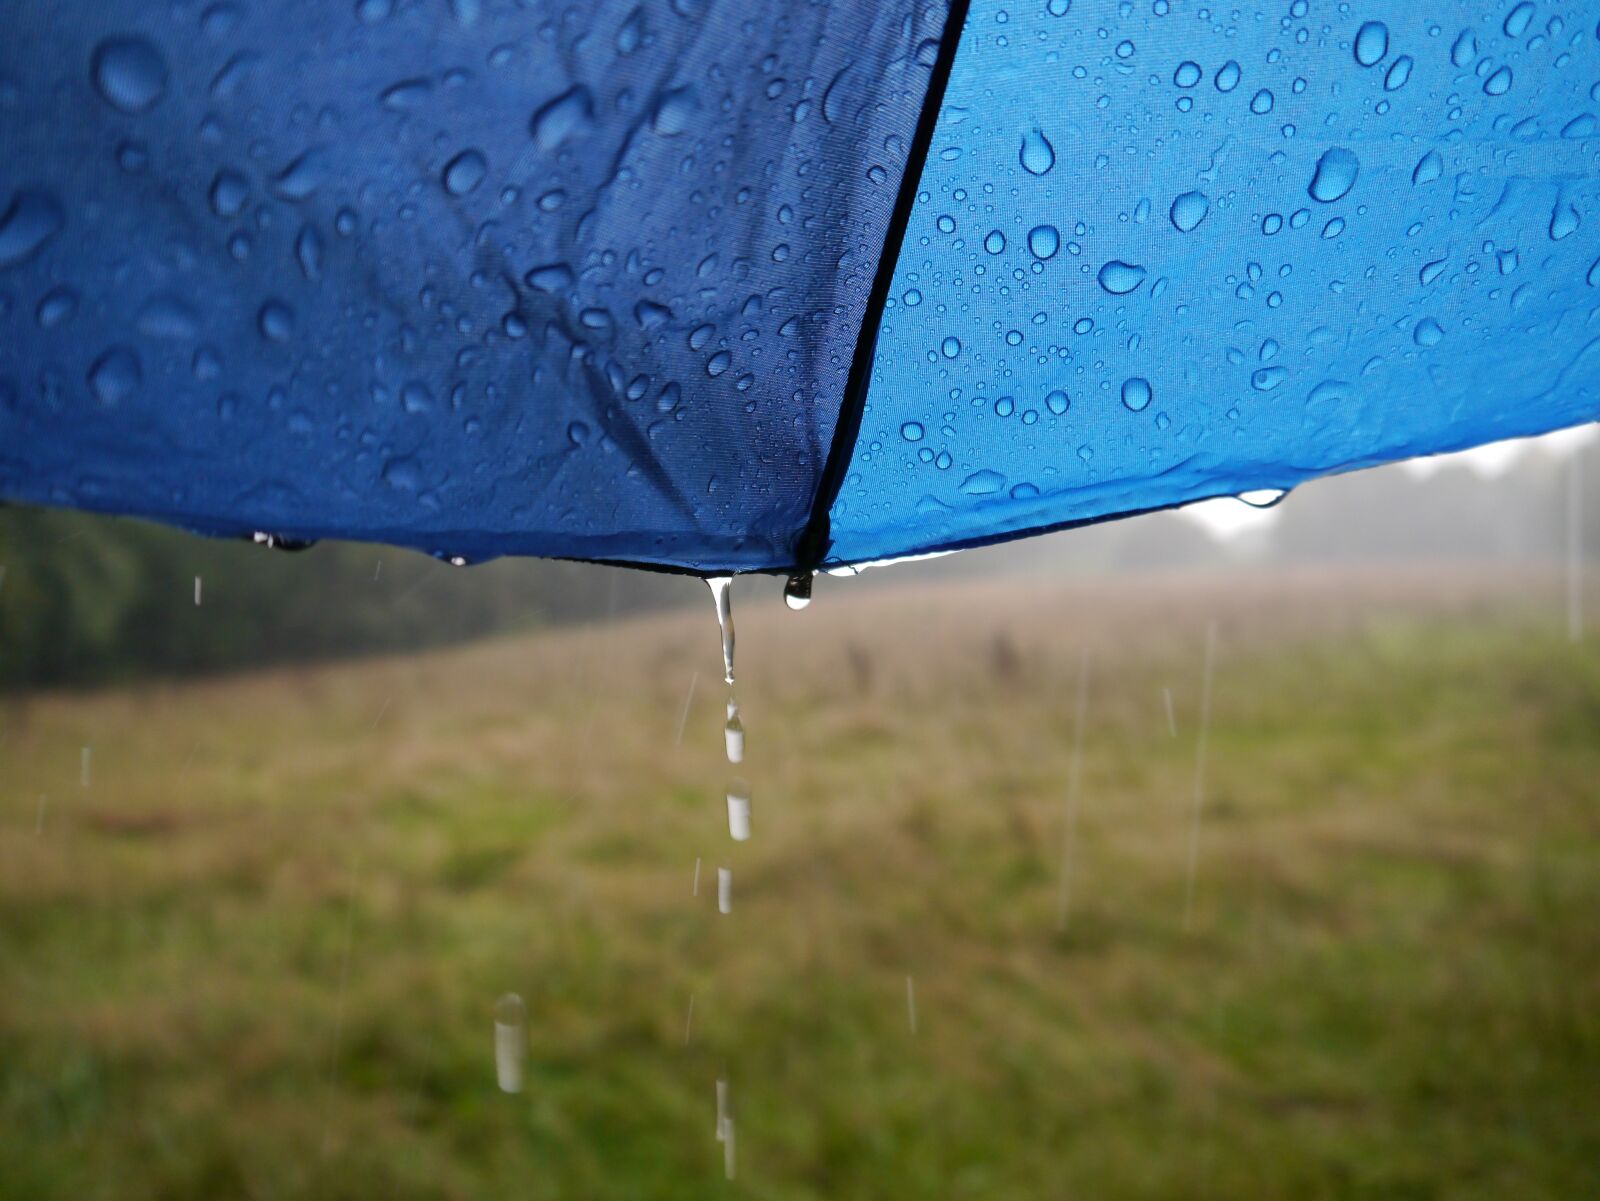 Panasonic Lumix DMC-G3 sample photo. Rain, nature, wet photography